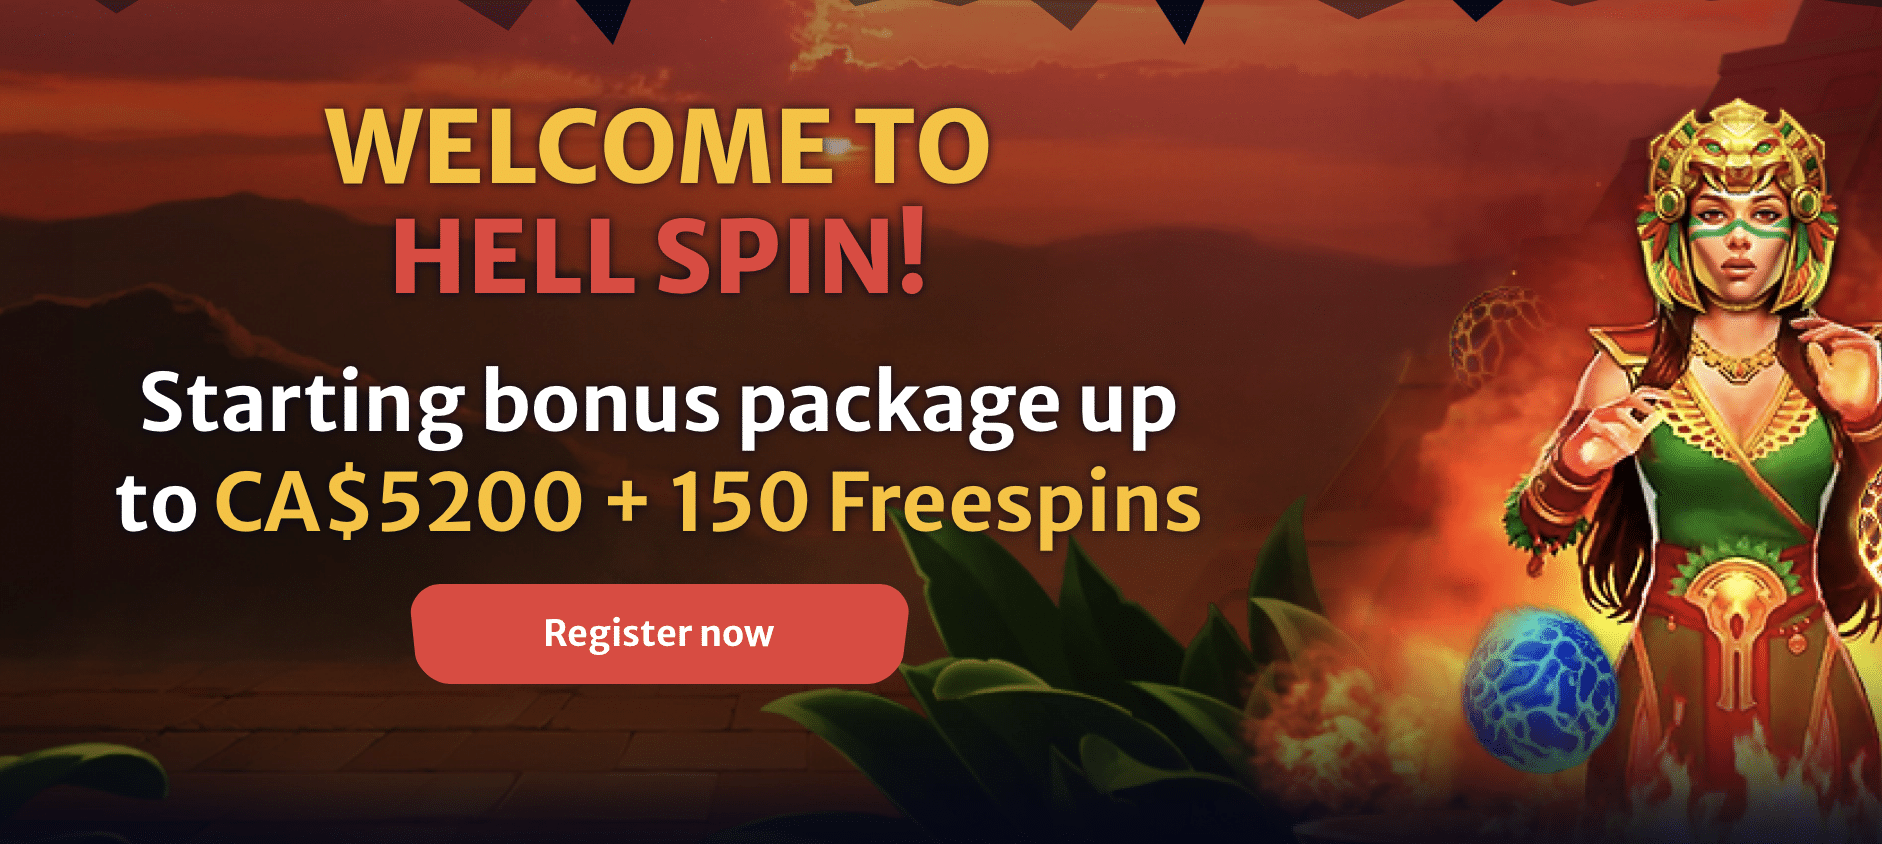 HellSpin Casino - welcome bonus